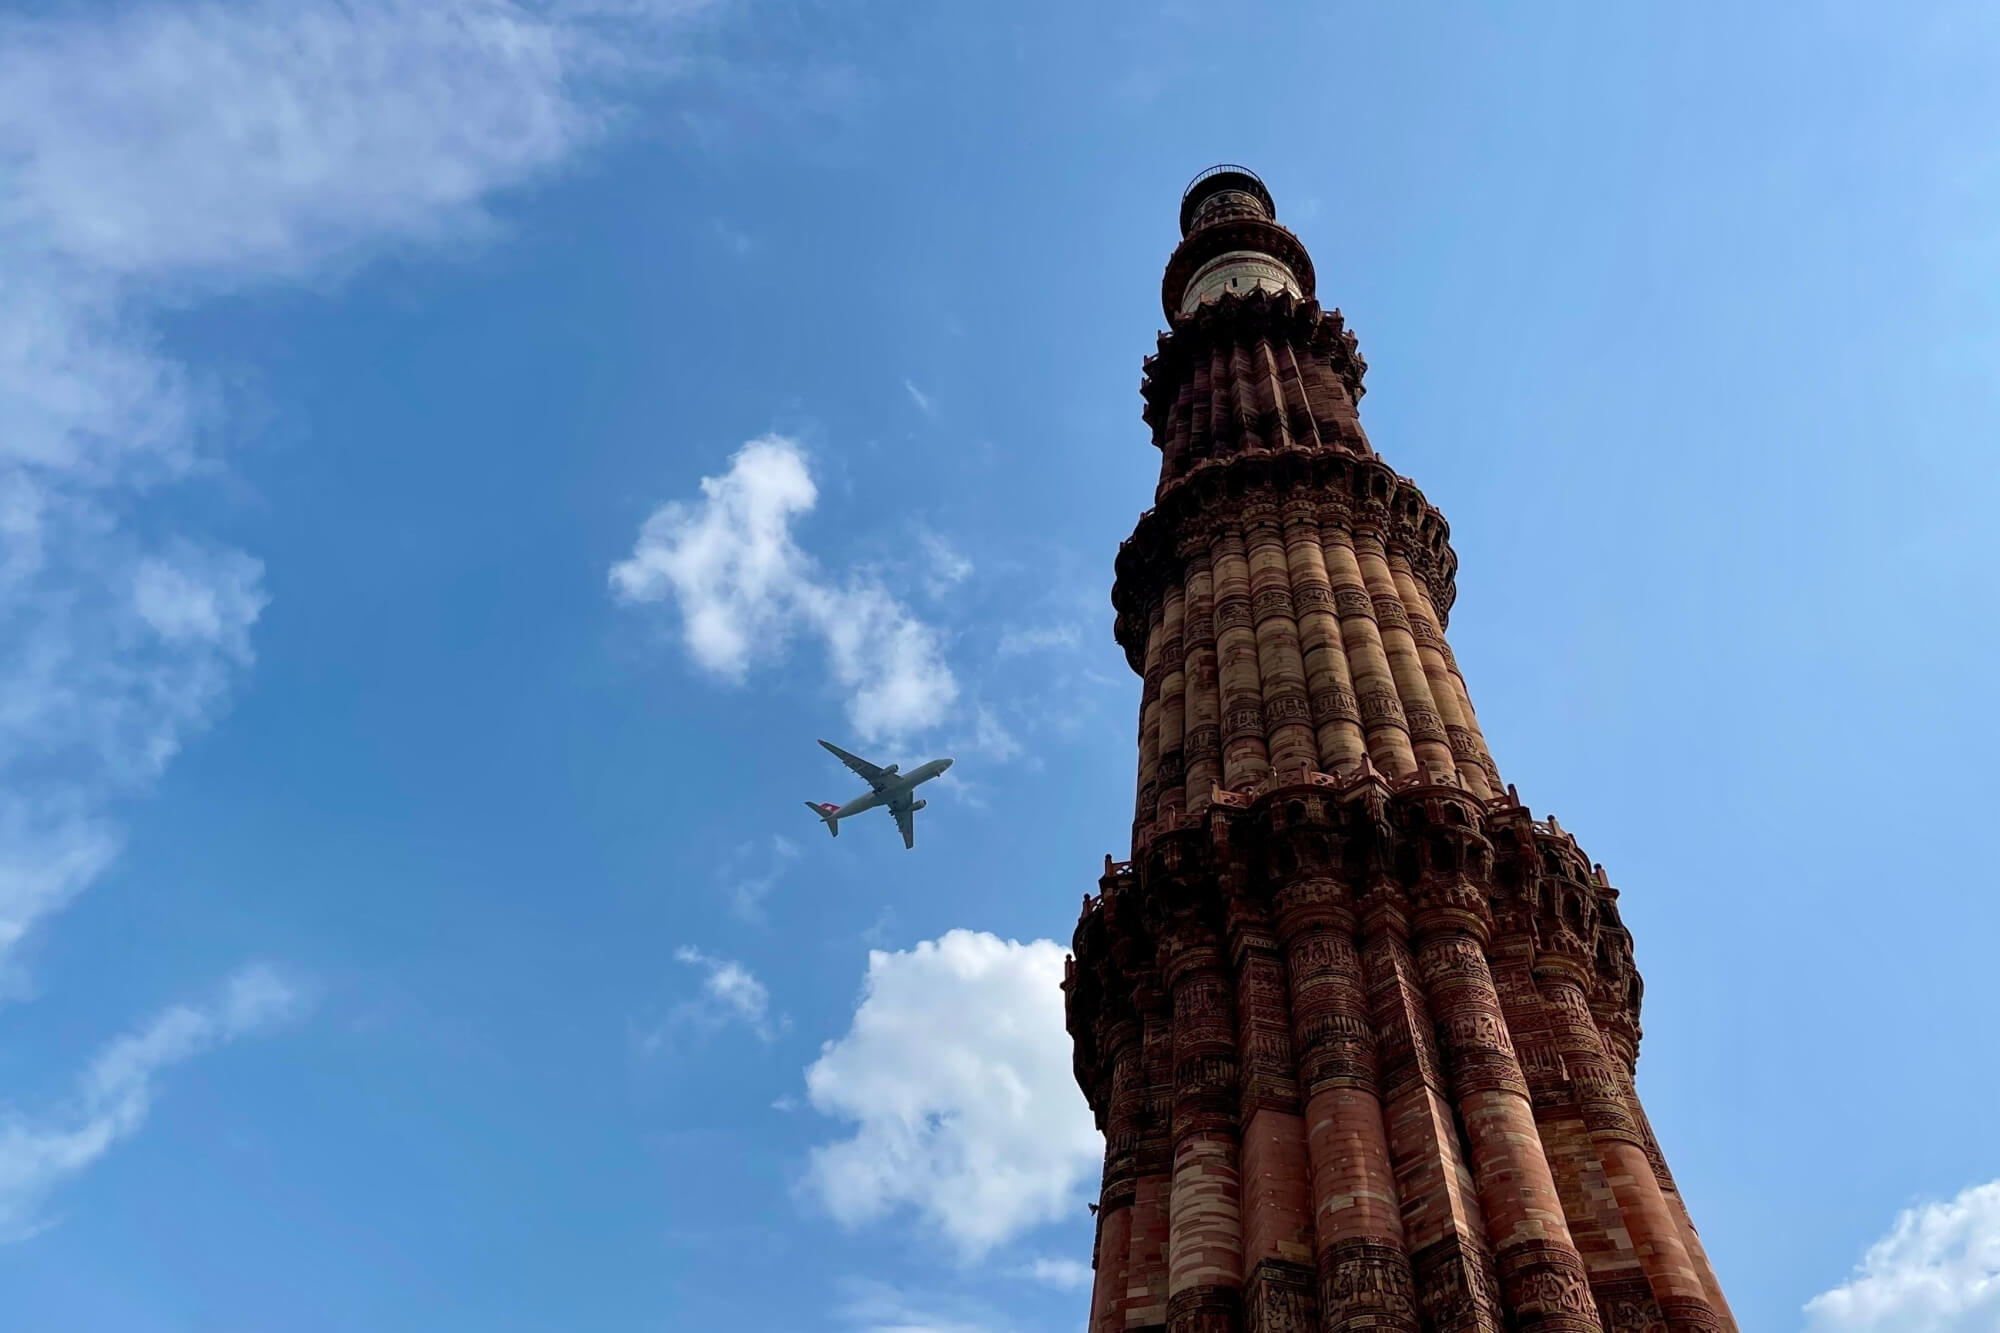 aircraft flies over Qutub Minar Tower, New Delhi, India